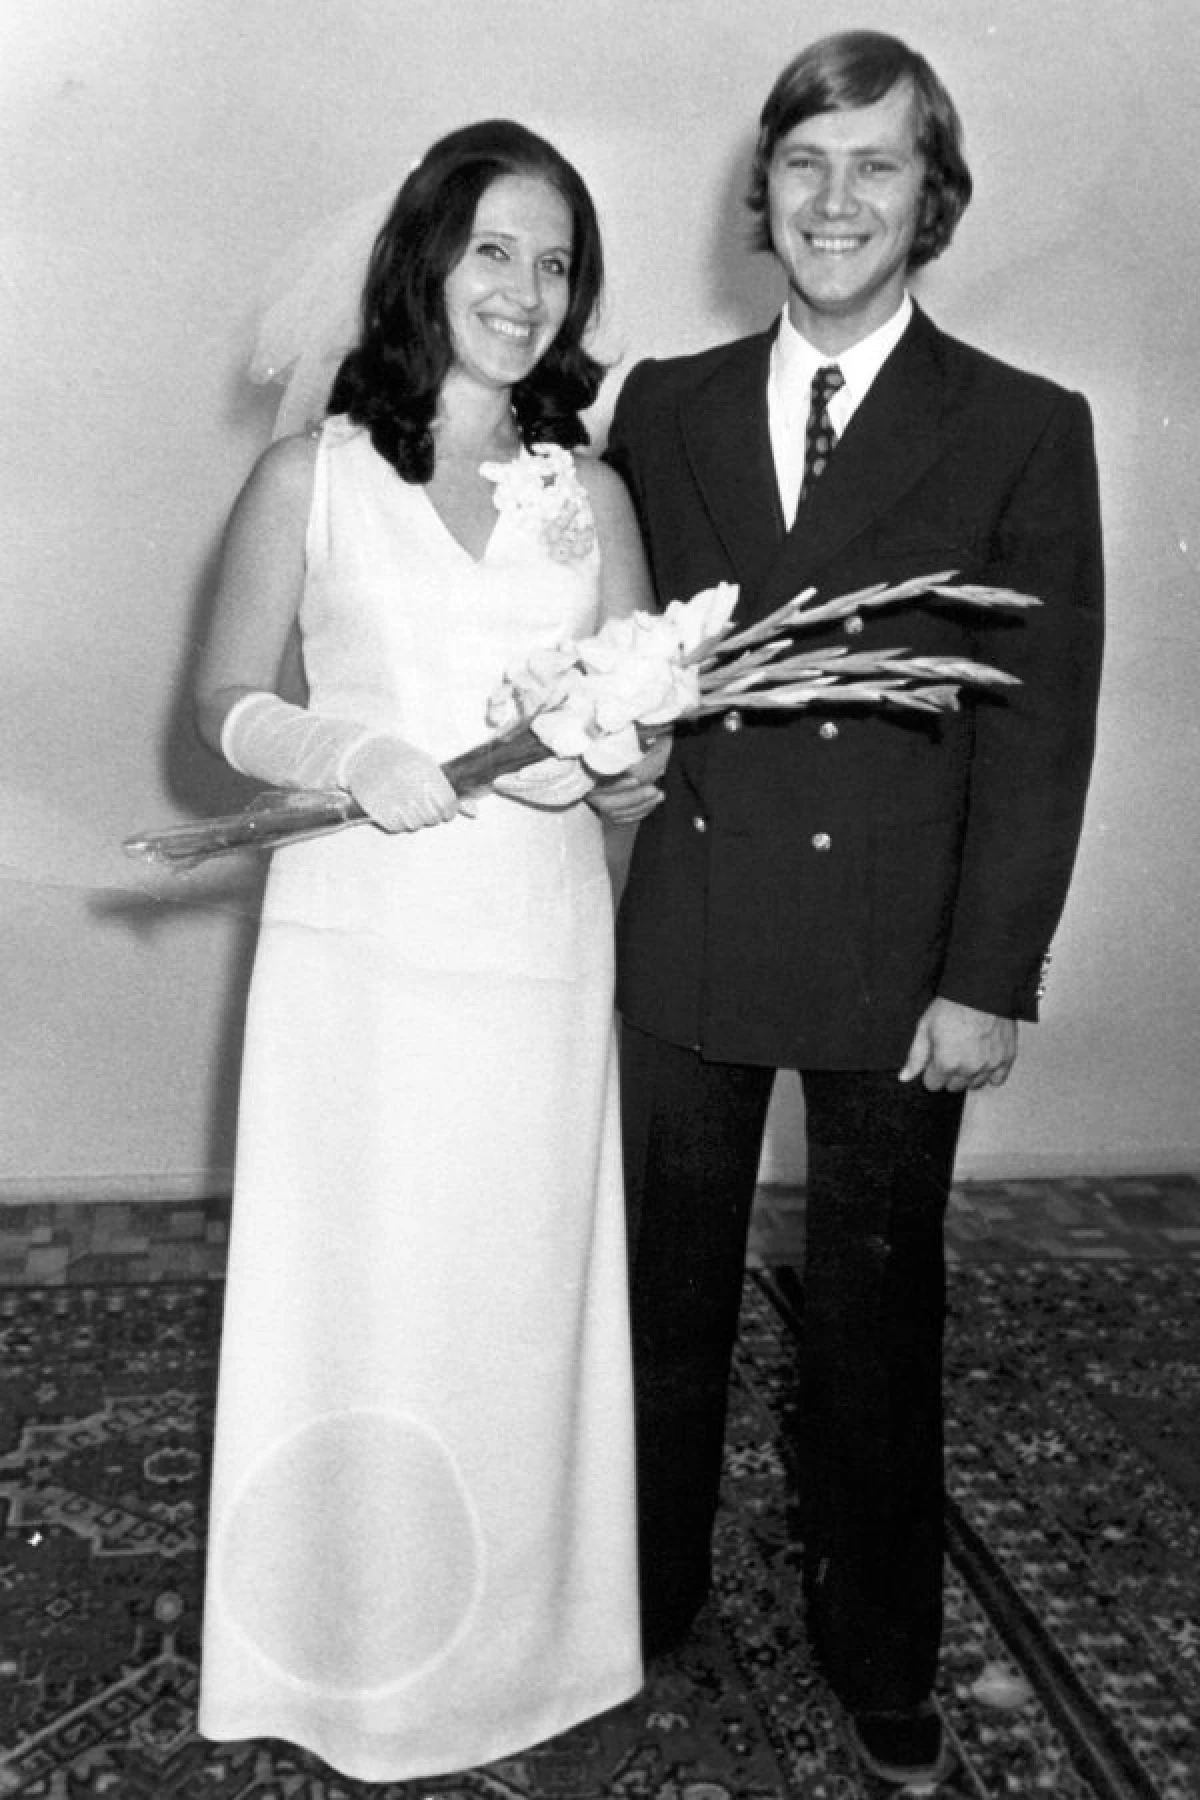 นักร้องในตำนานมองอะไรในวันแต่งงานของพวกเขา: Pugacheva, Rotaru, Babkina - รูปภาพ Archival 23254_12